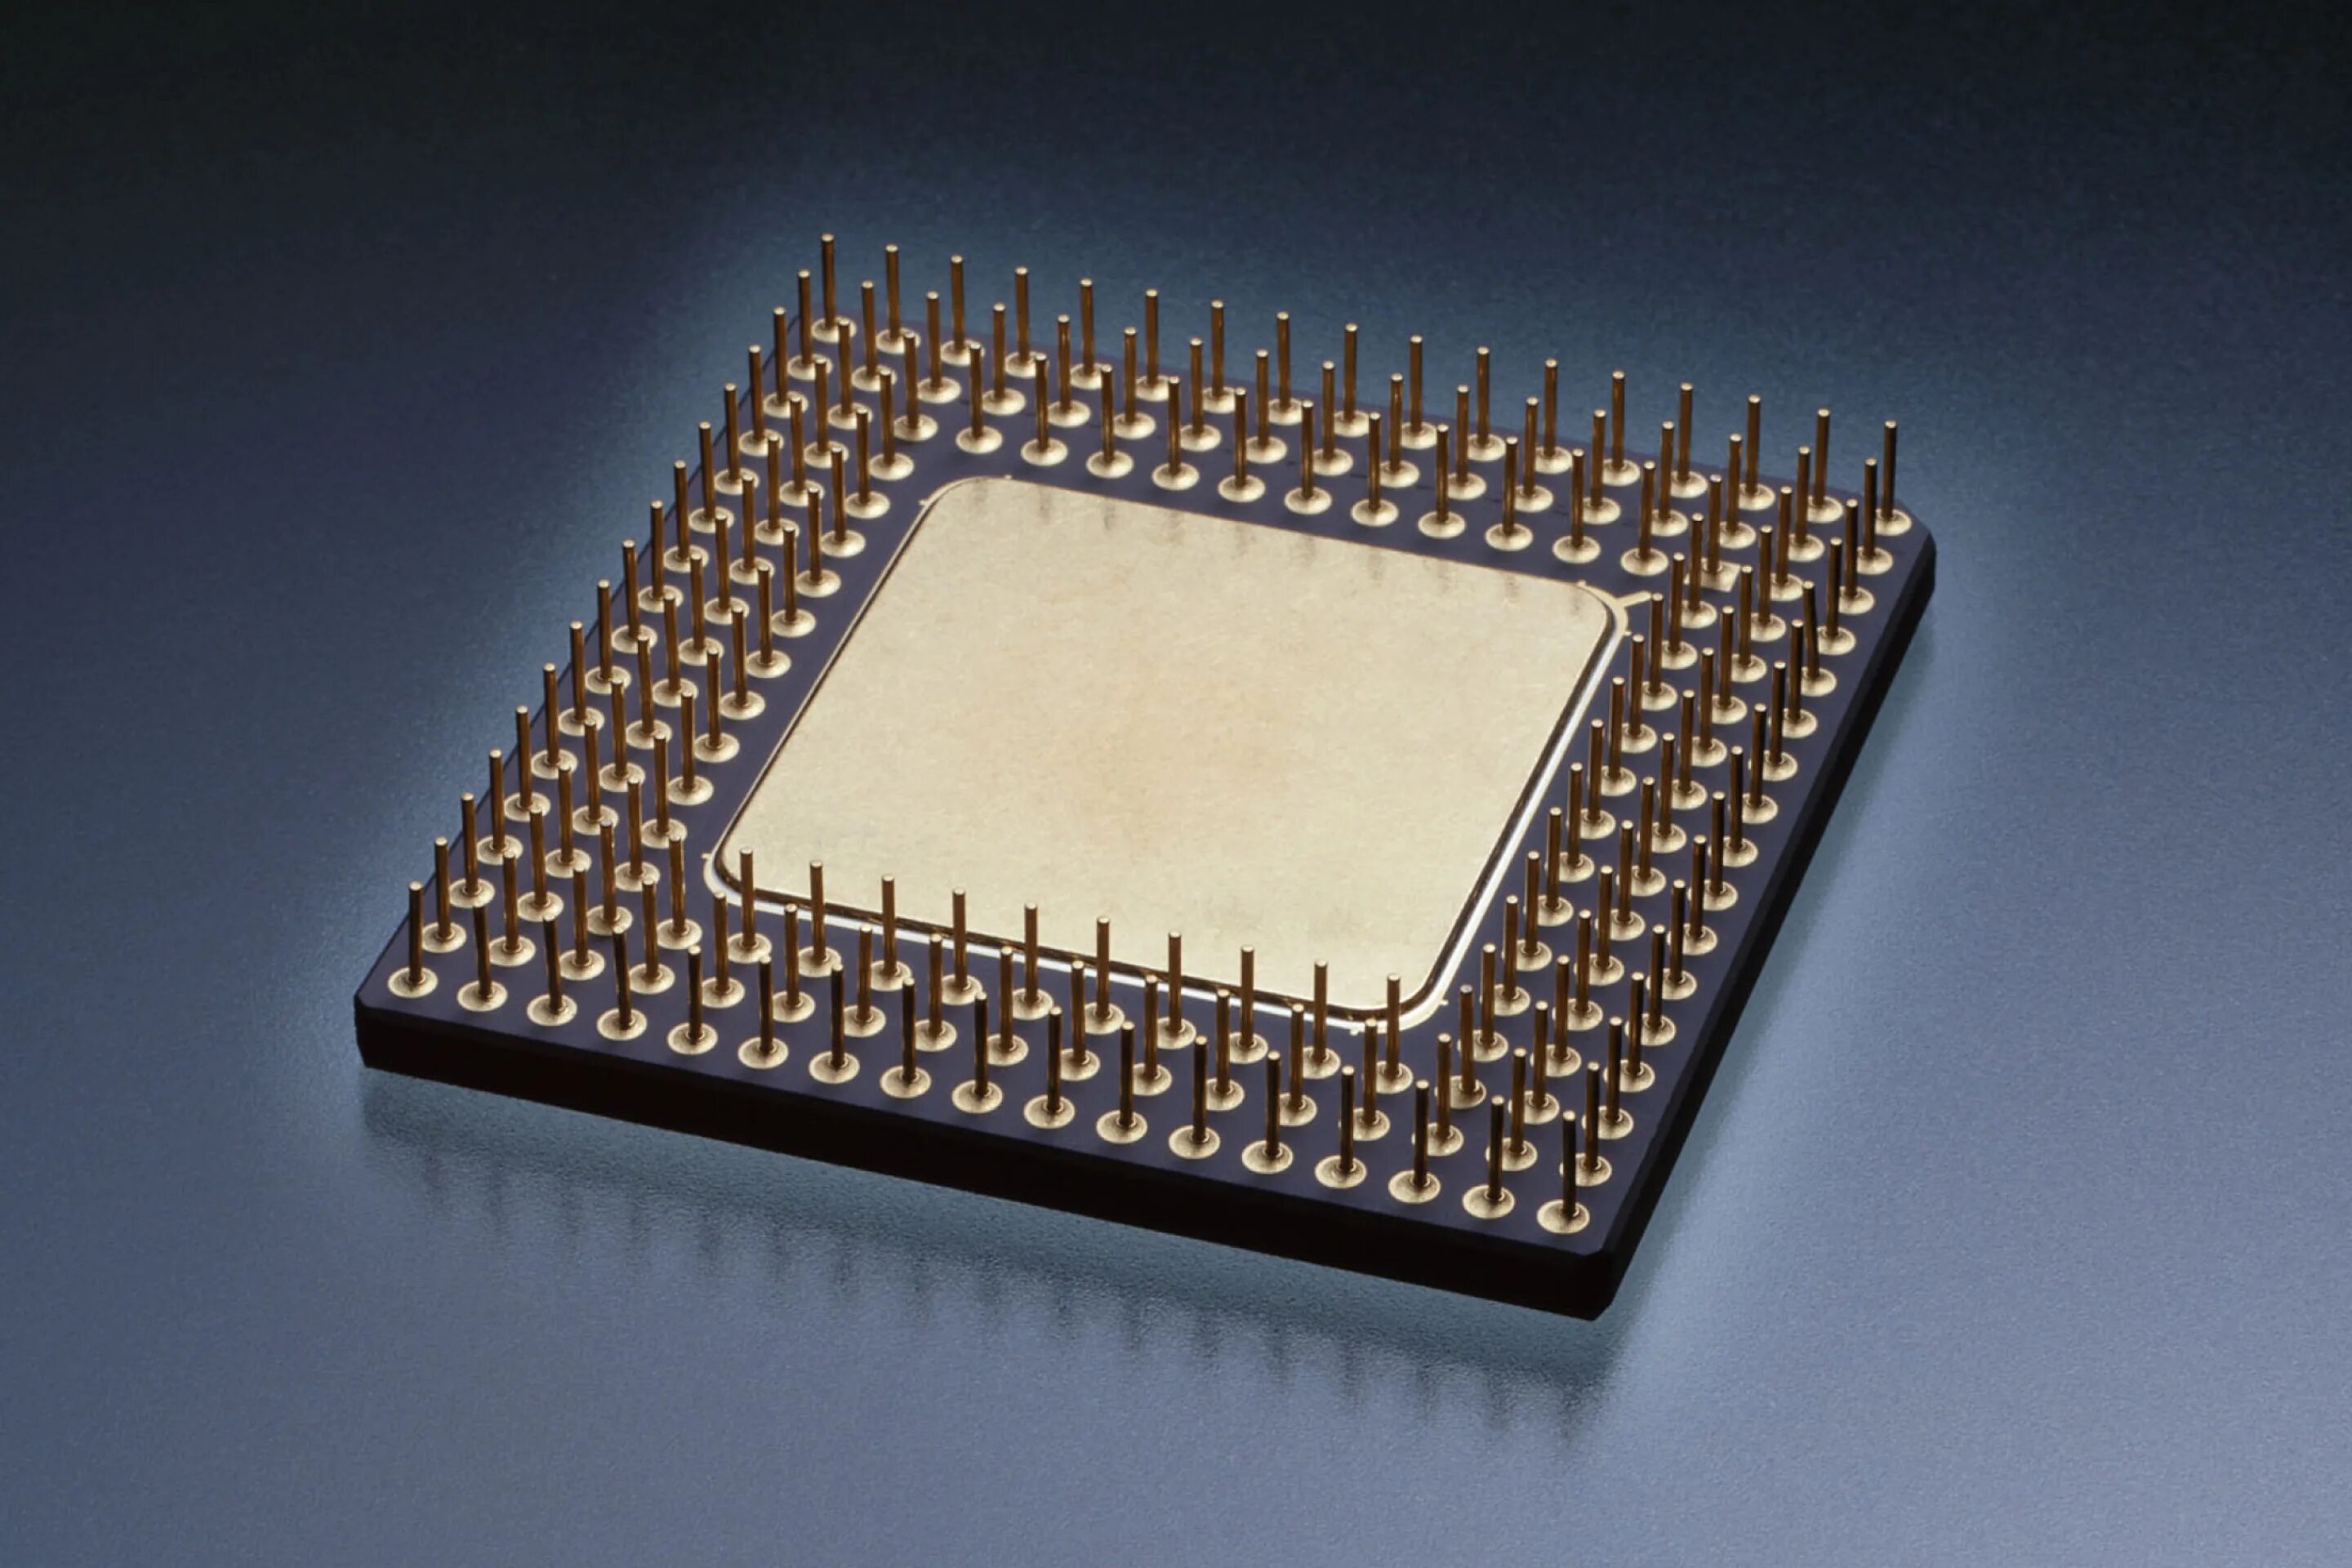 Процессор (CPU) микропроцессор. Многокристальный процессор АМД. Микропроцессор 1811. Микропроцессор 1818.